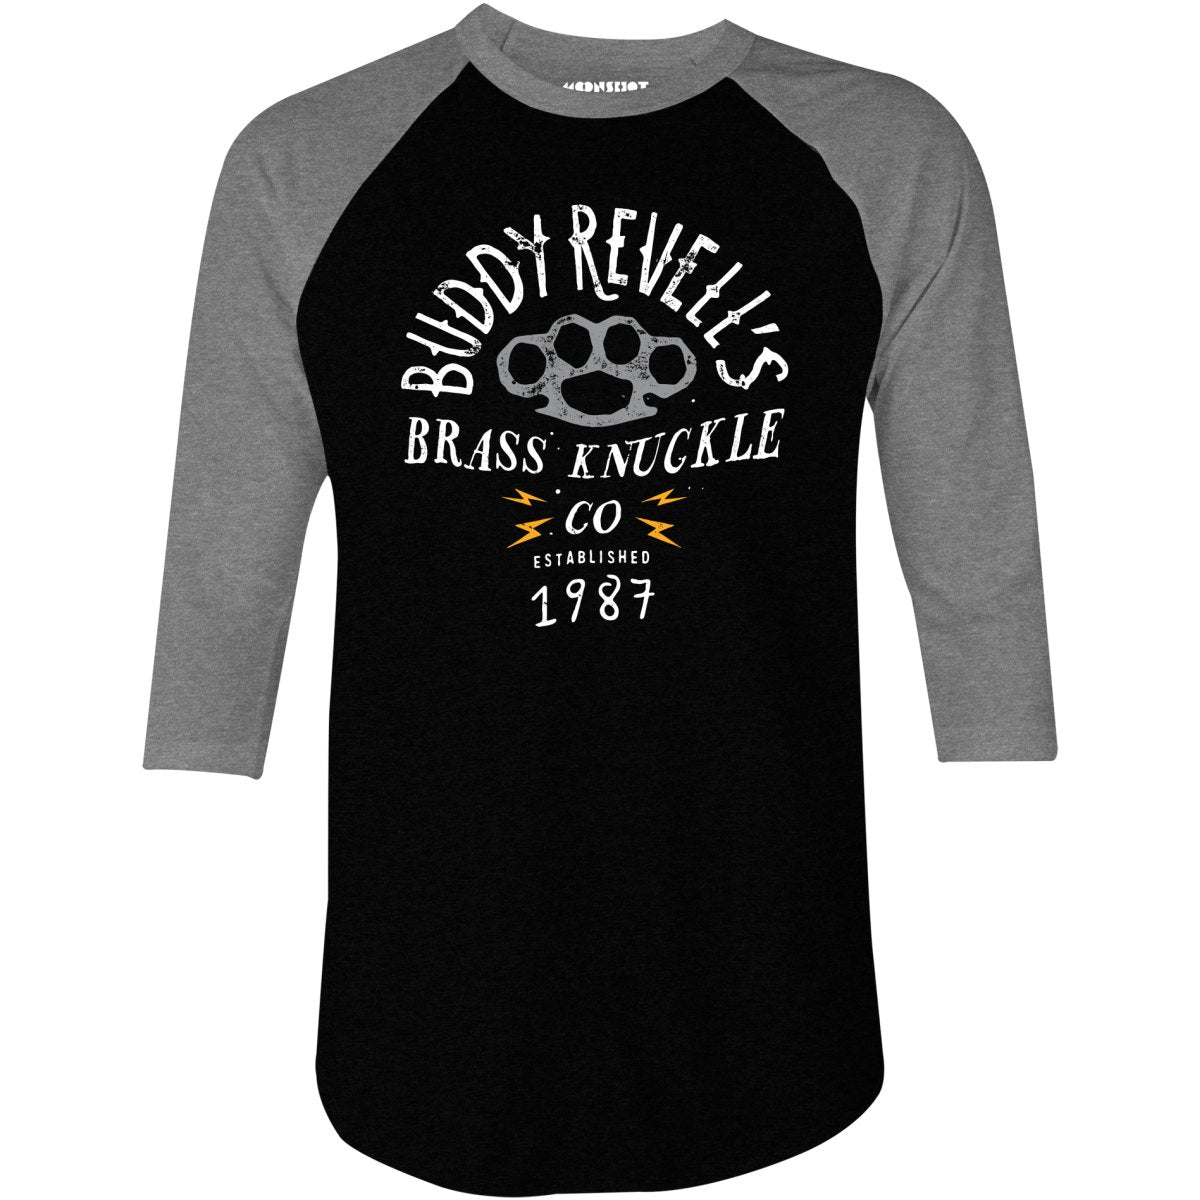 Buddy Revell's Brass Knuckle Co. - 3/4 Sleeve Raglan T-Shirt